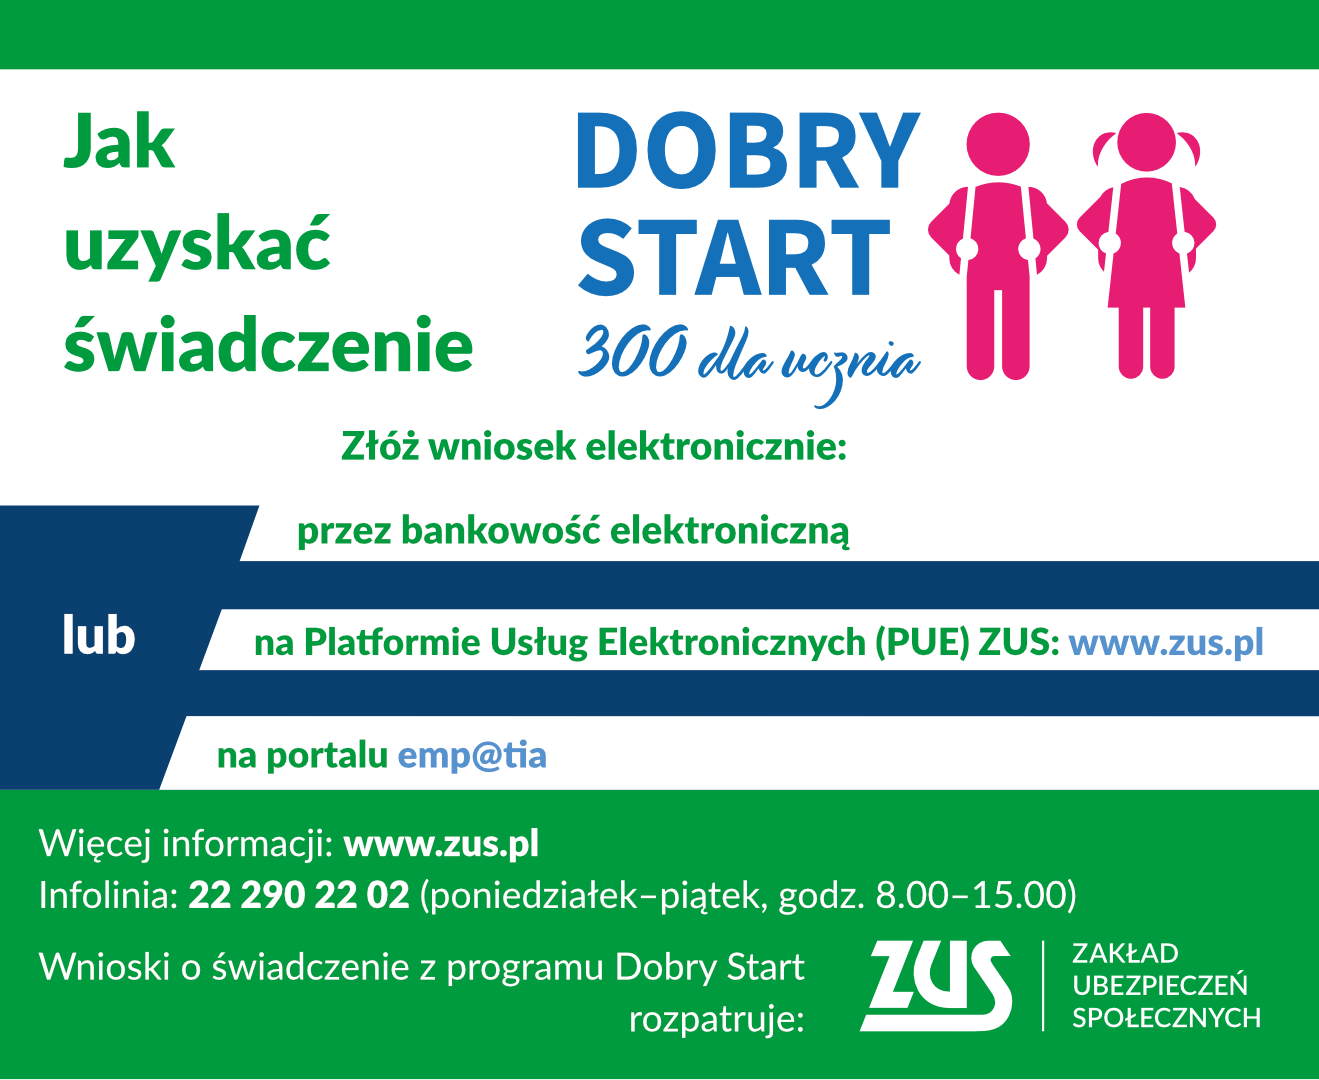 plakat informacyjny zus jak uzyskać świadczenia dobry start dla ucznia 300 + złóż wniosek elektronicznie przez bankowość elektroniczną,na platformie UE ZUS, www.zus.pl lub na portalu emp@tia, więcej informacji www.zus.pl